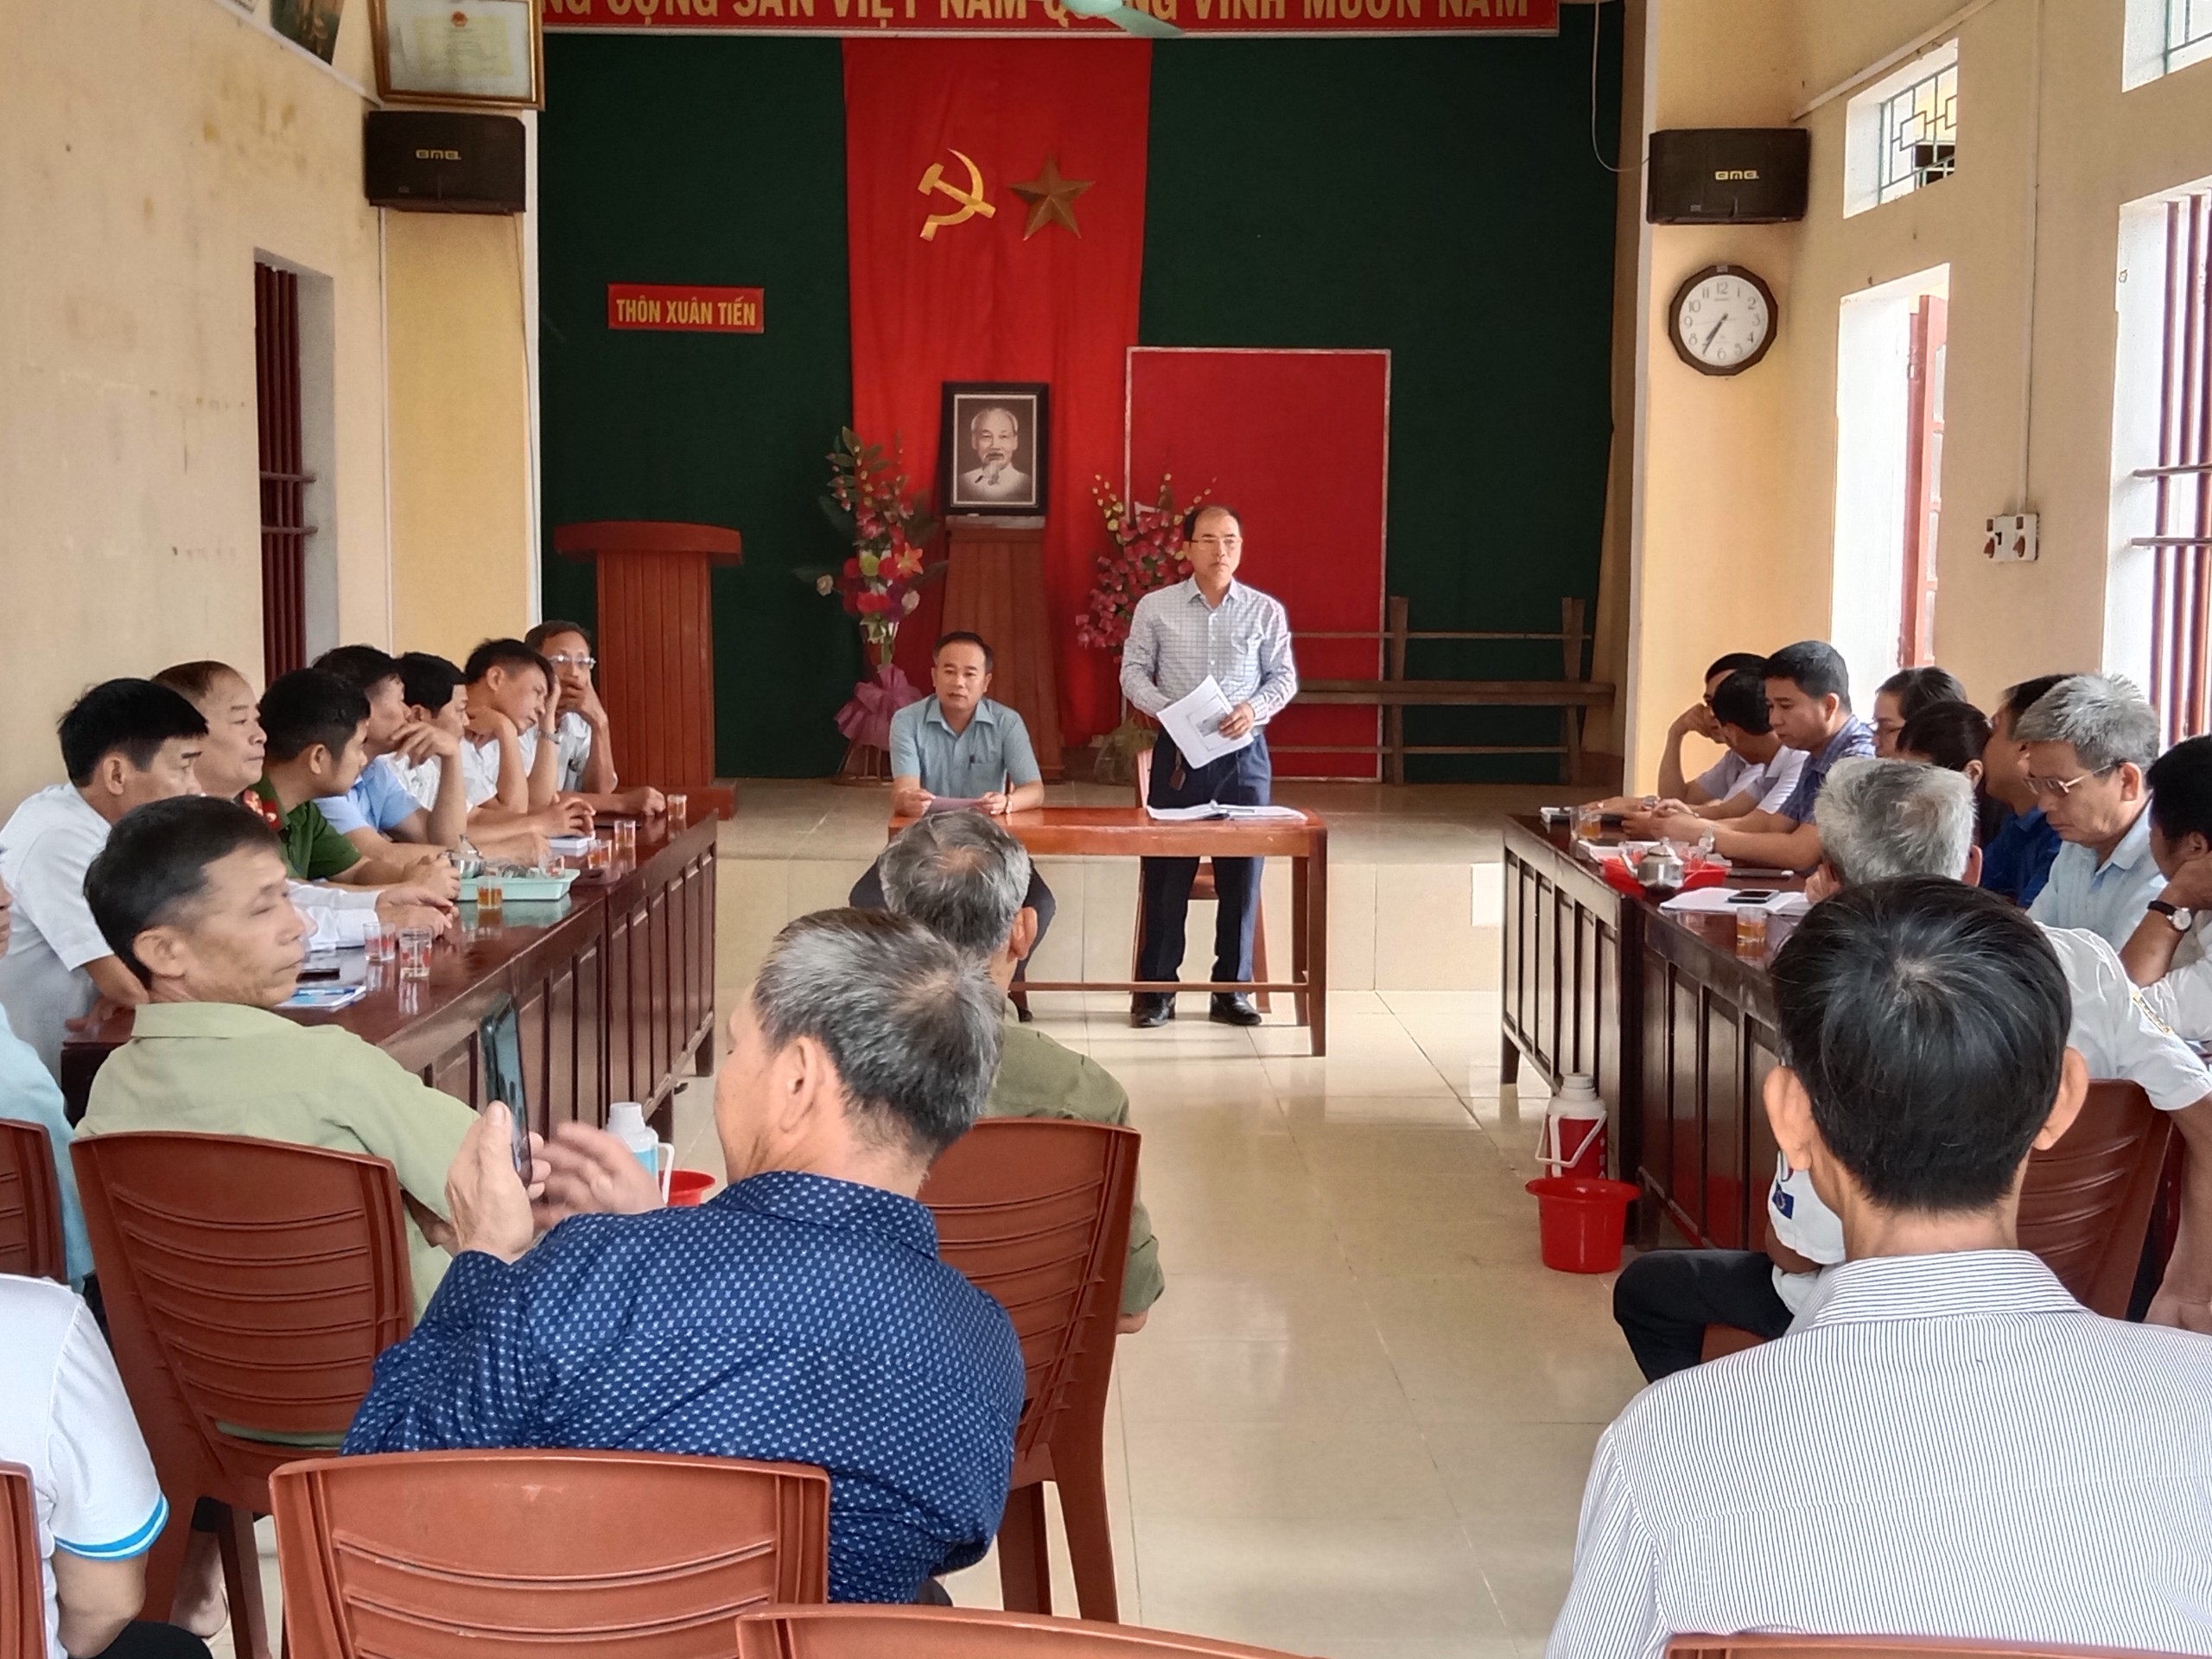 Ban chỉ đạo Chương trình các mục tiêu quốc gia (MTQG) xã tổ chức họp giao ban Ban xây dựng thôn NTM kiểu mẫu tại thôn Xuân Tiến, xã Quảng Long, huyện Quảng Xương, tỉnh Thanh Hoá.